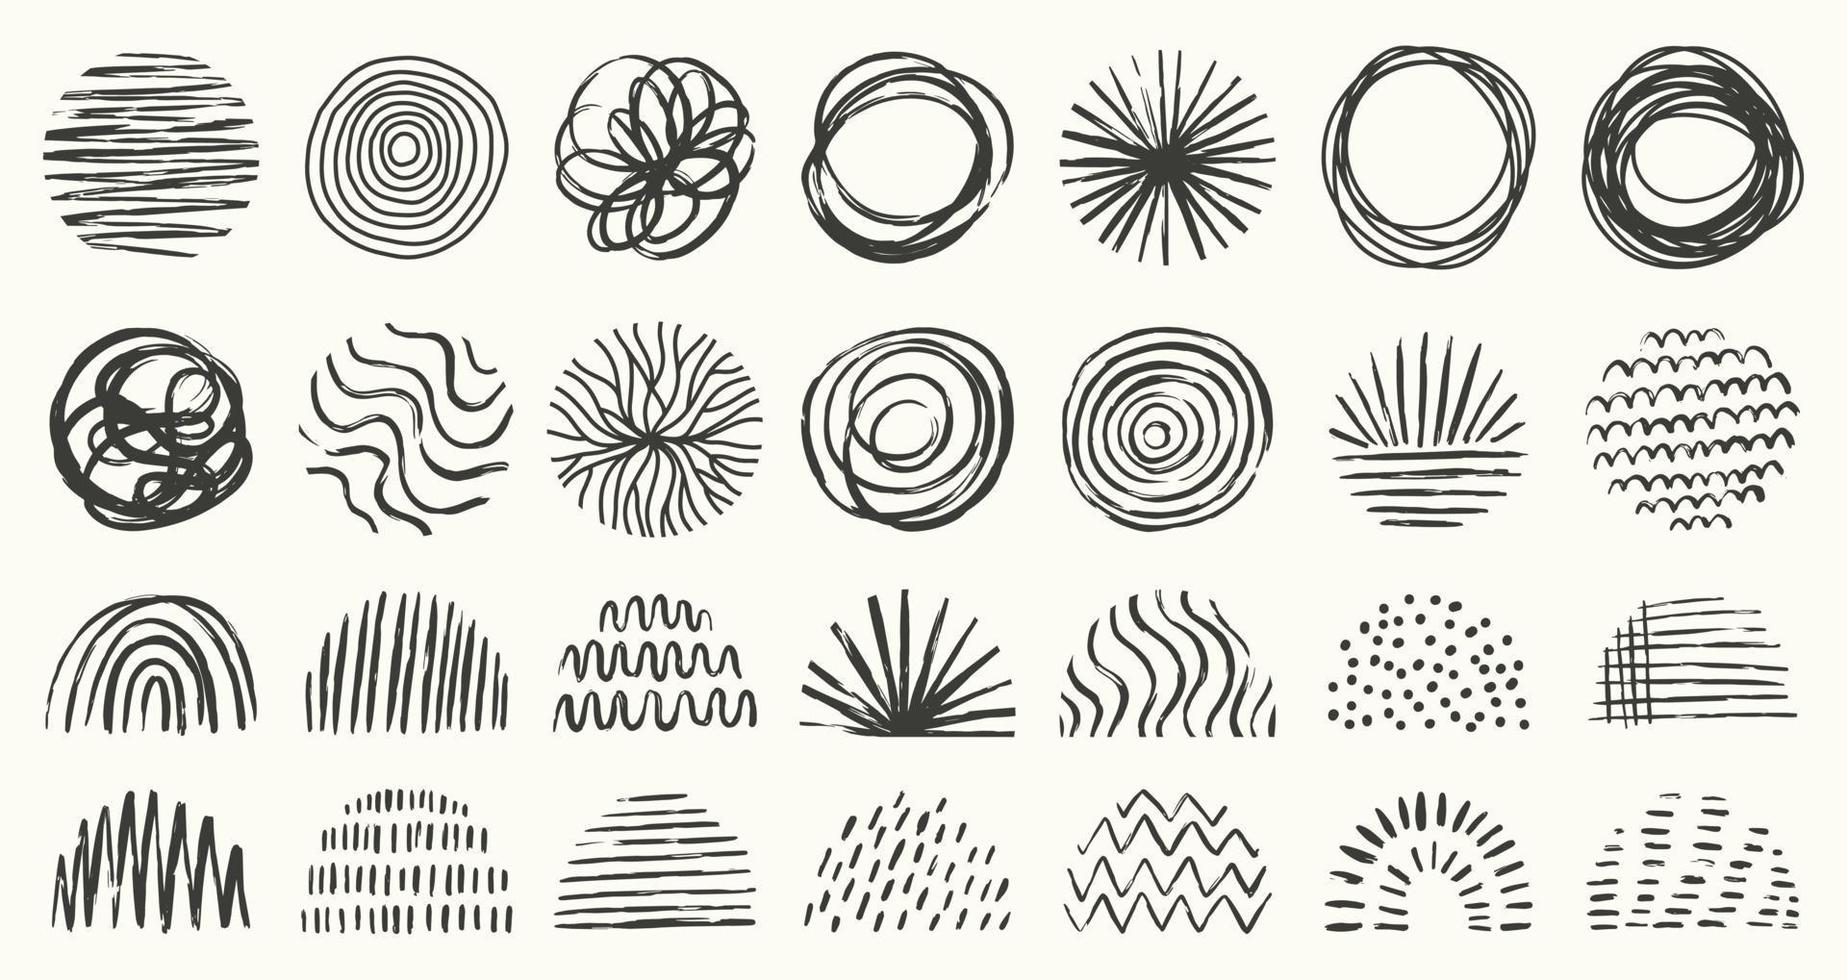 conjunto de patrones o fondos abstractos redondos y semicírculos. formas de doodle dibujados a mano. manchas, gotas, curvas, líneas. ilustración vectorial de moda moderna contemporánea. vector